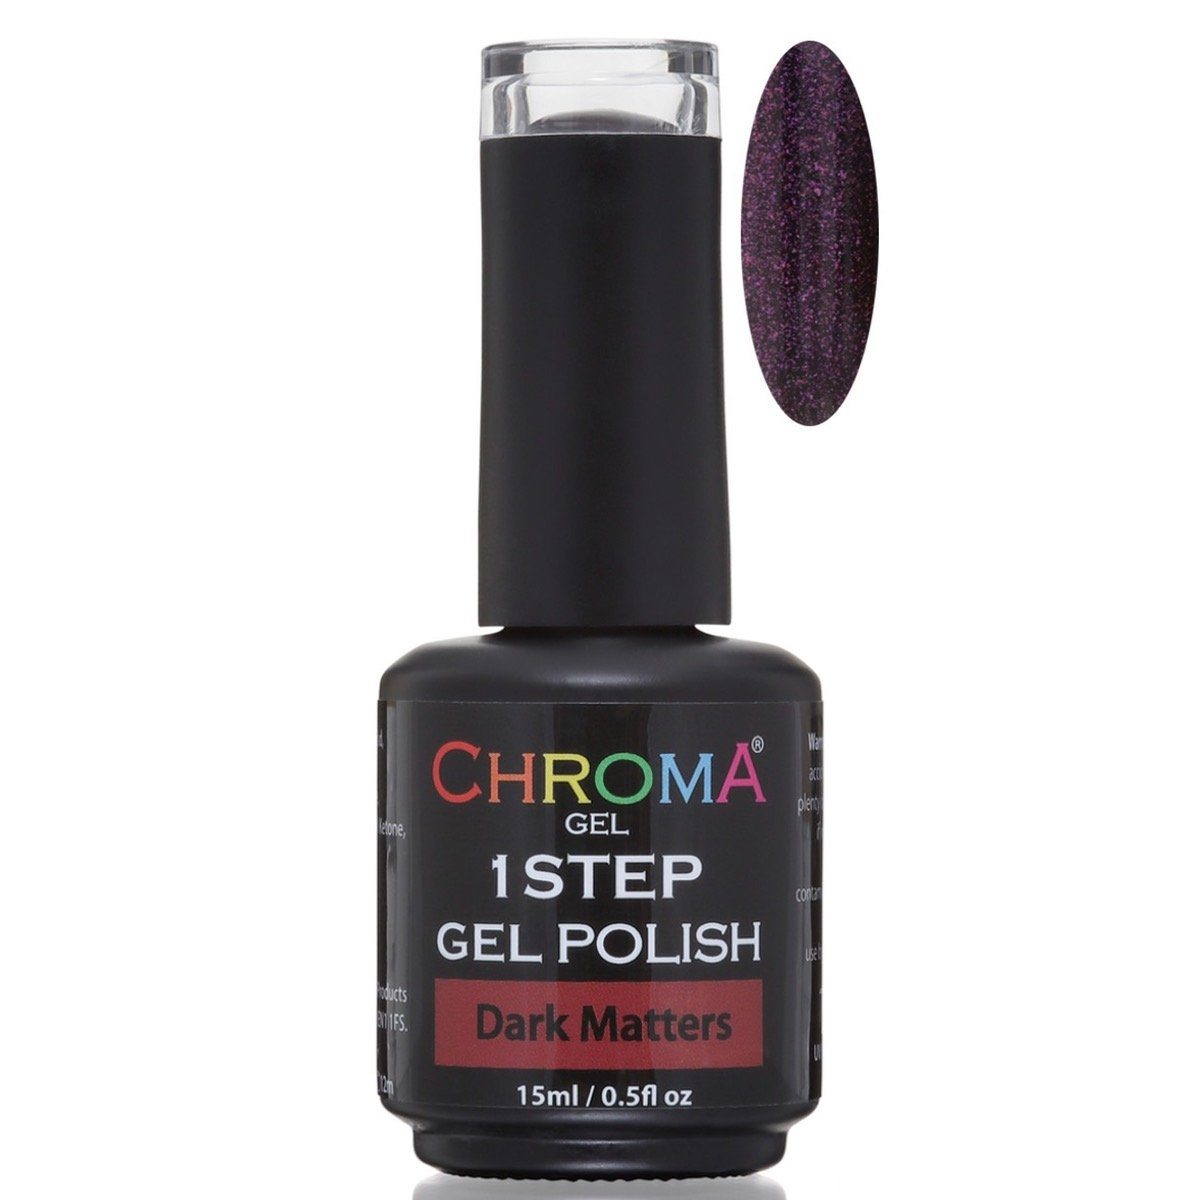 Chroma Gel 1 Step Gel Polish Dark Matters No.75 - Chroma Gel